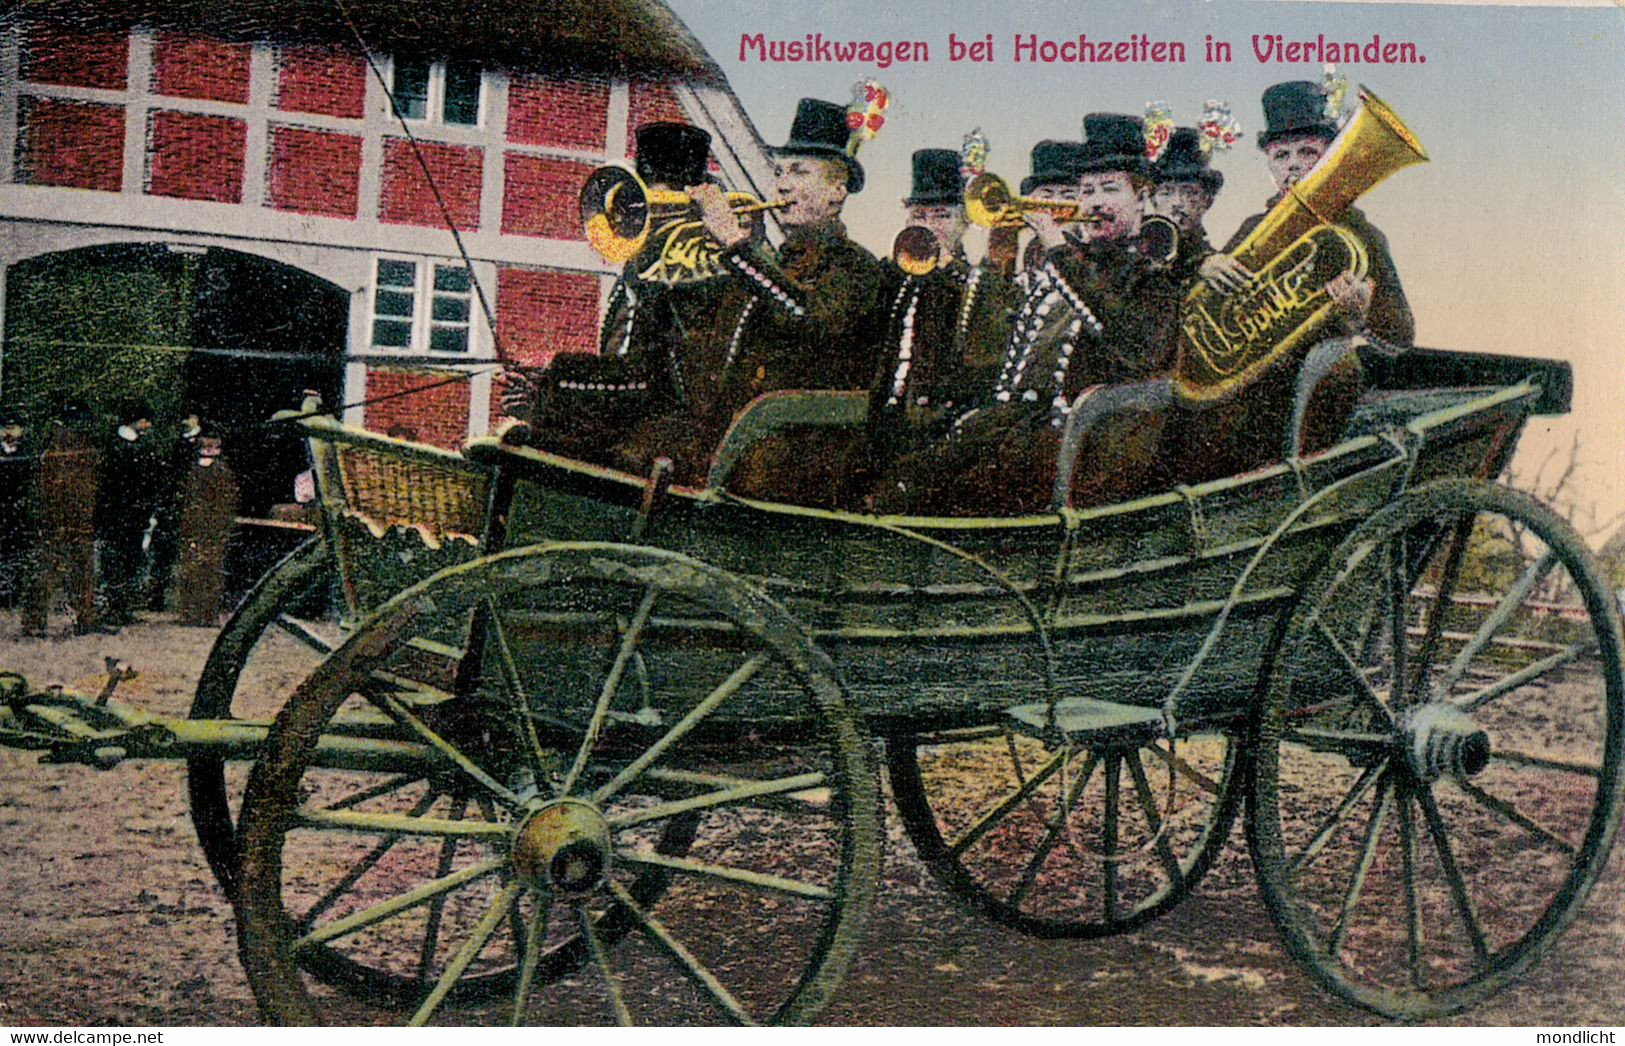 Musikwagen Bei Hochzeiten In Vierlanden, 1915. (Vierlande, Bergedorf). - Bergedorf